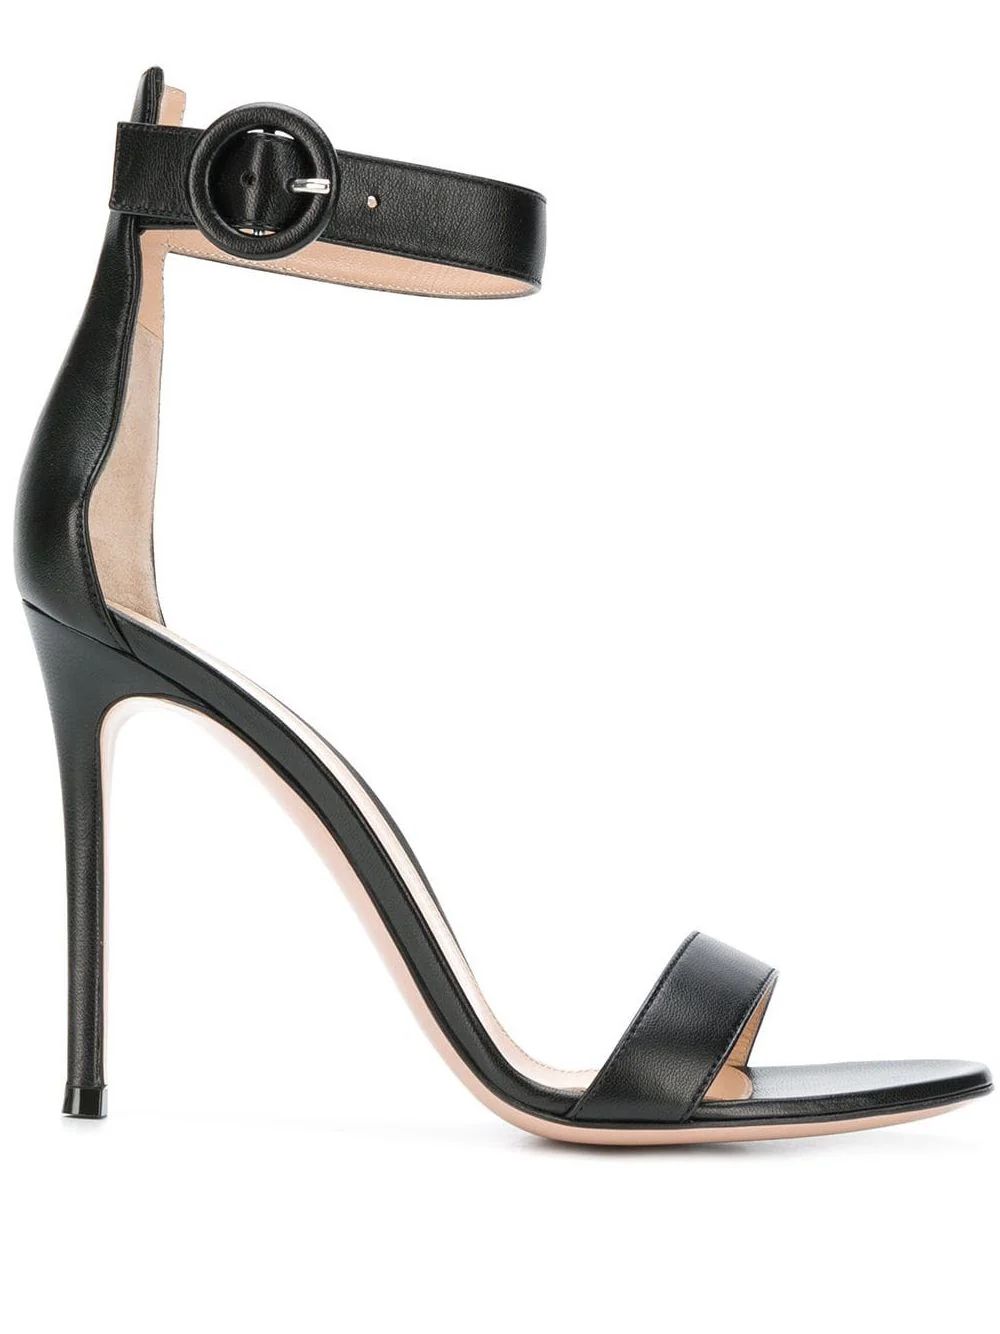 Gianvito RossiPortofino 105mm leather sandals$757 | Farfetch Global